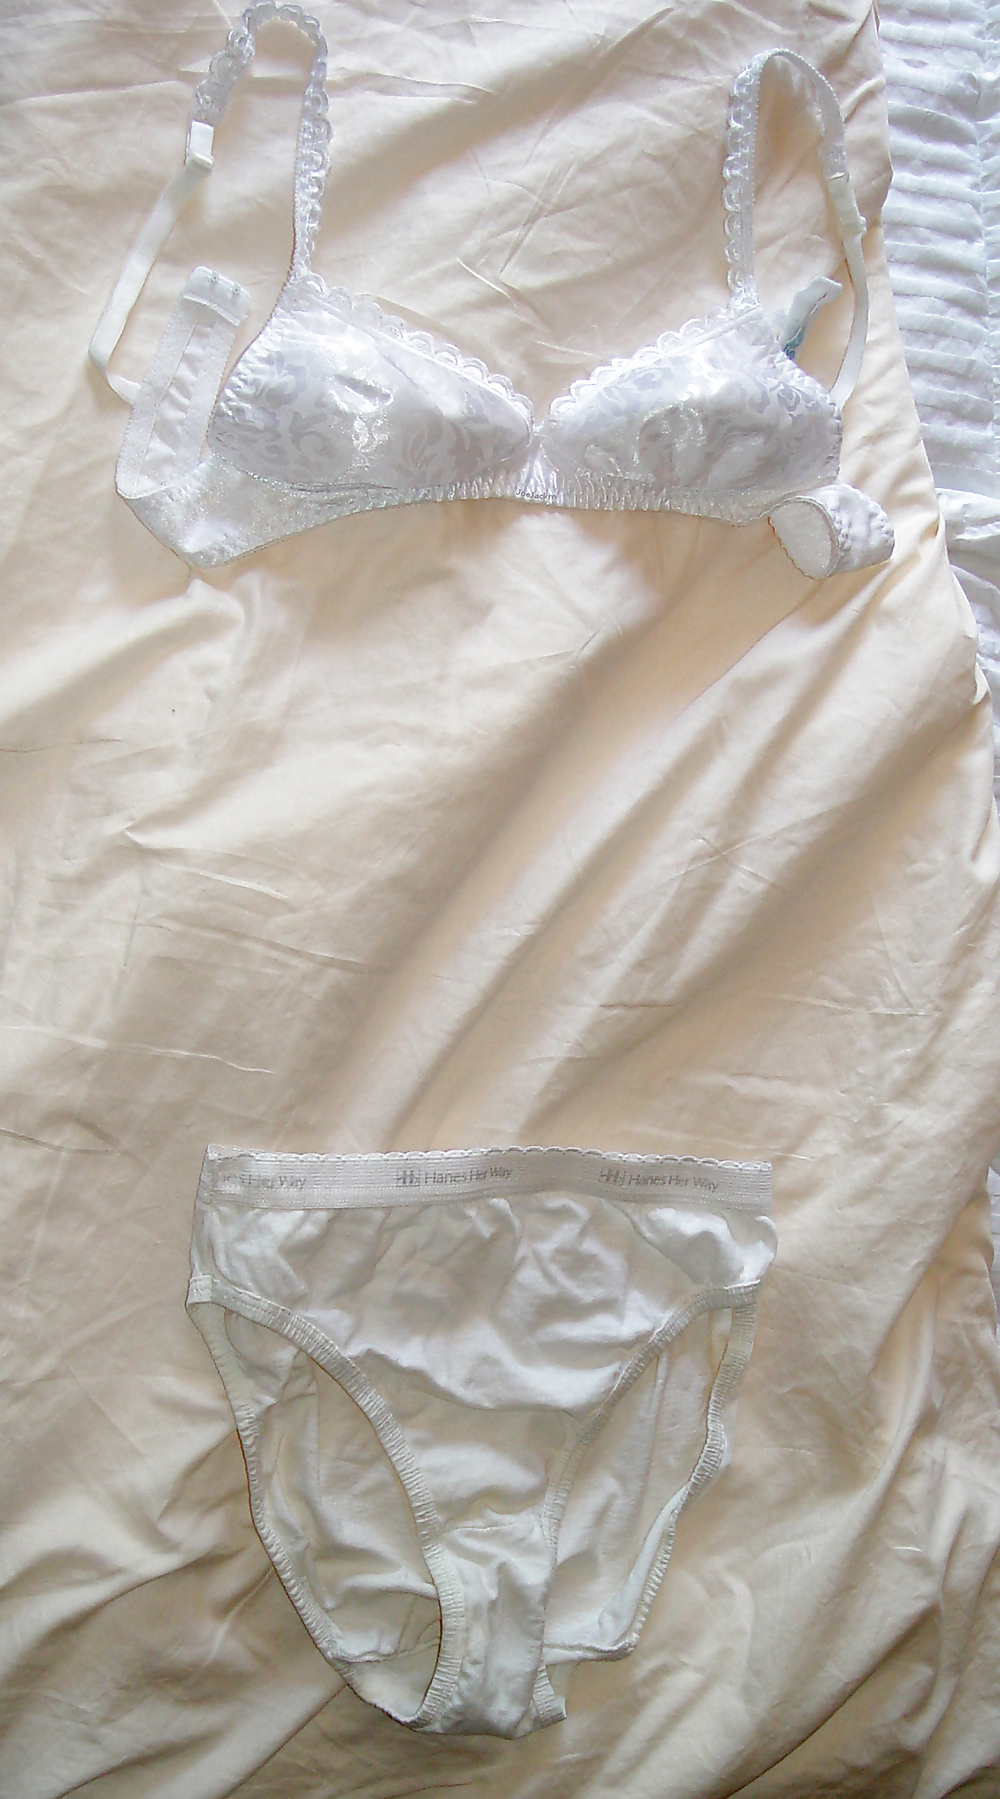 FamFriend's Wife's Underwear & Lingerie #17931593